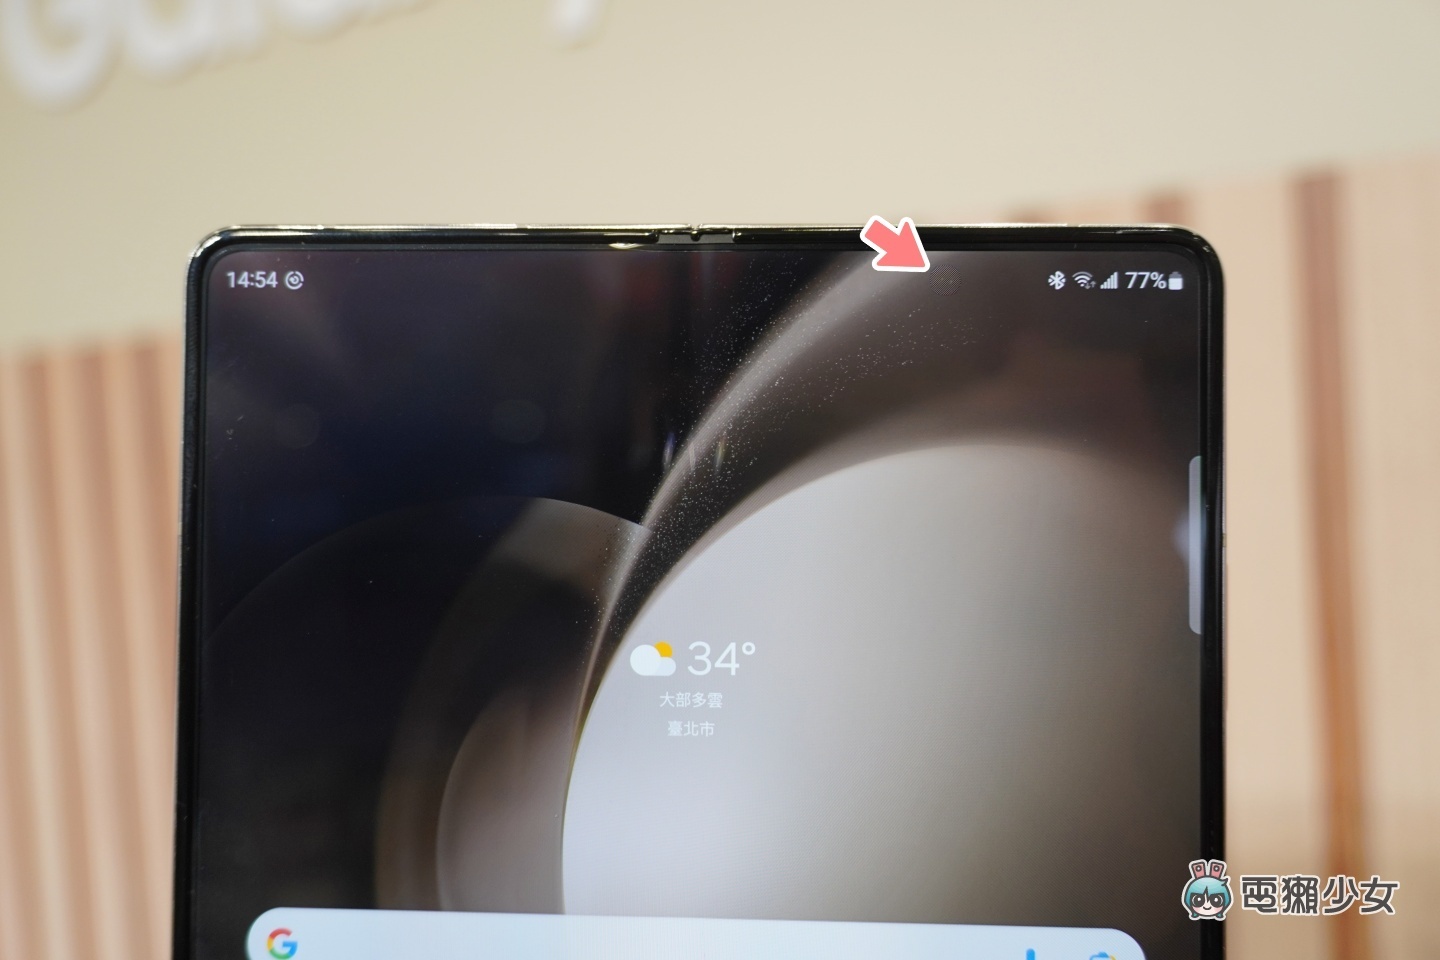 出門｜三星摺疊機 Galaxy Z Flip5／Z Fold5 登場！Z Flip5 的封面螢幕變得更大、更靈活啦